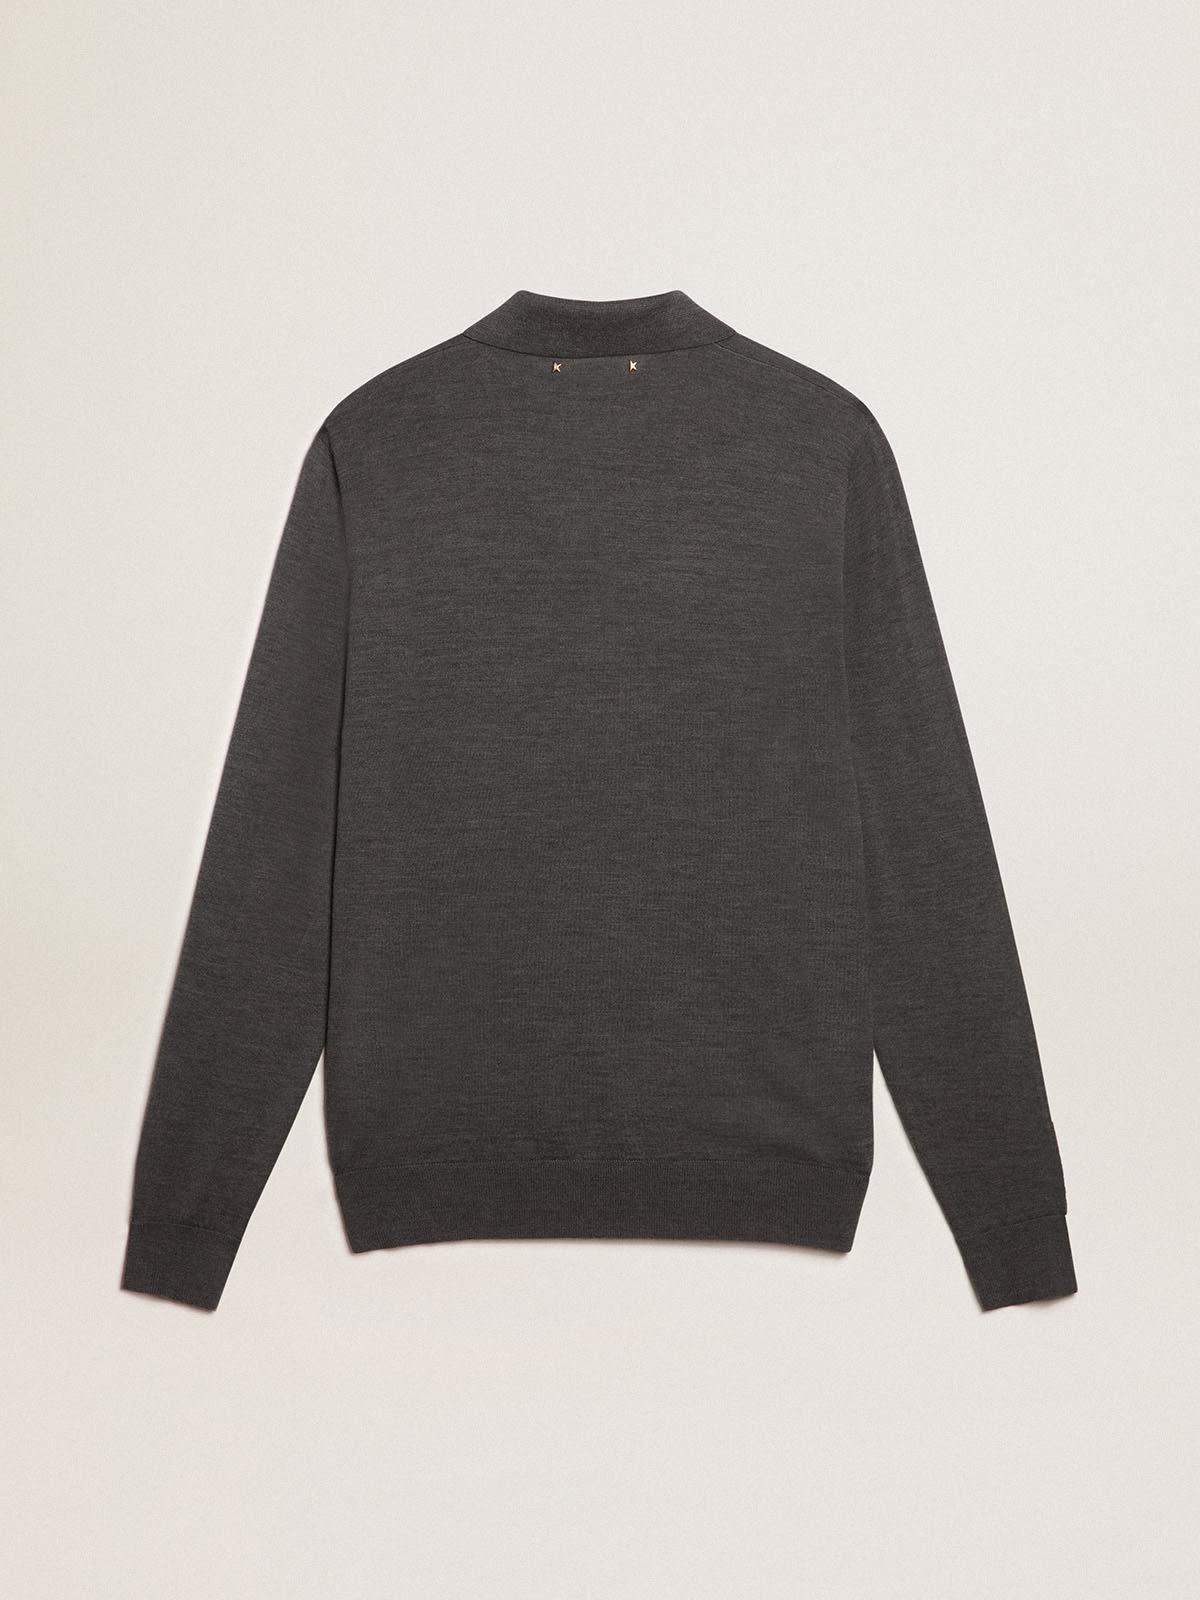 Golden Goose - Men’s long-sleeved polo shirt in gray merino wool in 